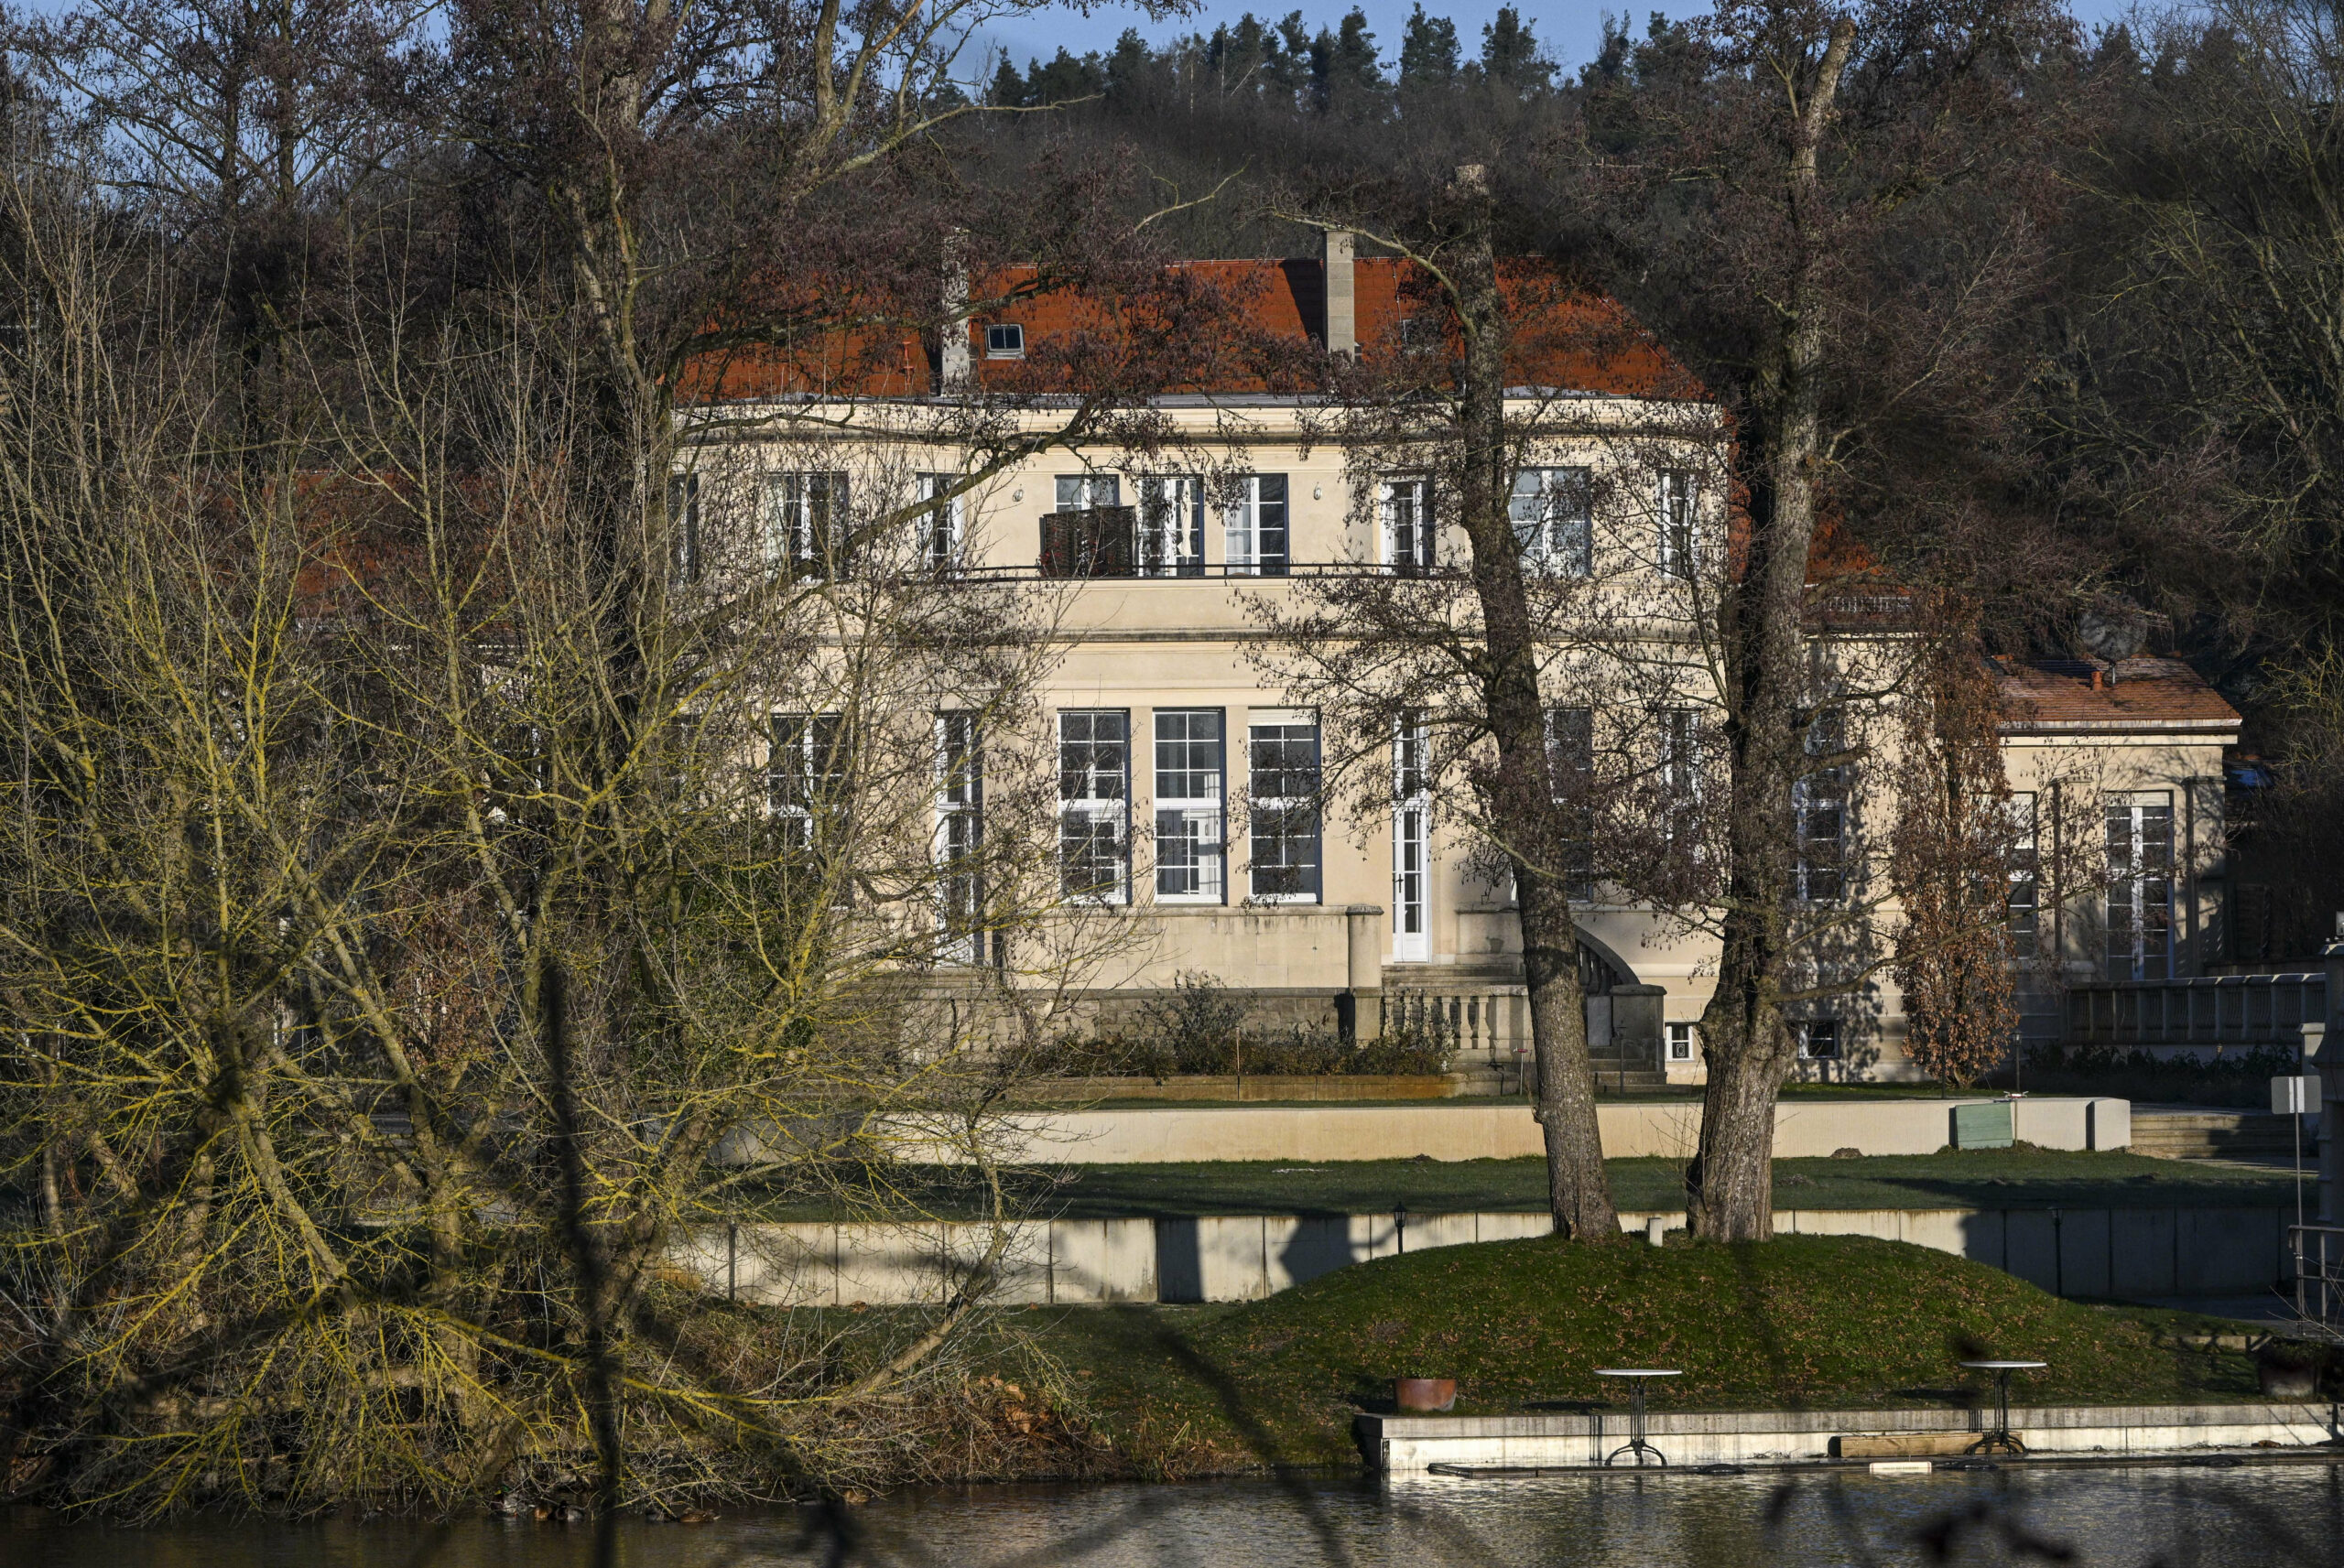 Blick auf das Gästehaus in Potsdam, in dem AfD-Politiker nach einem Bericht des Medienhauses „Correctiv“ im November an einem Treffen teilgenommen haben sollen.